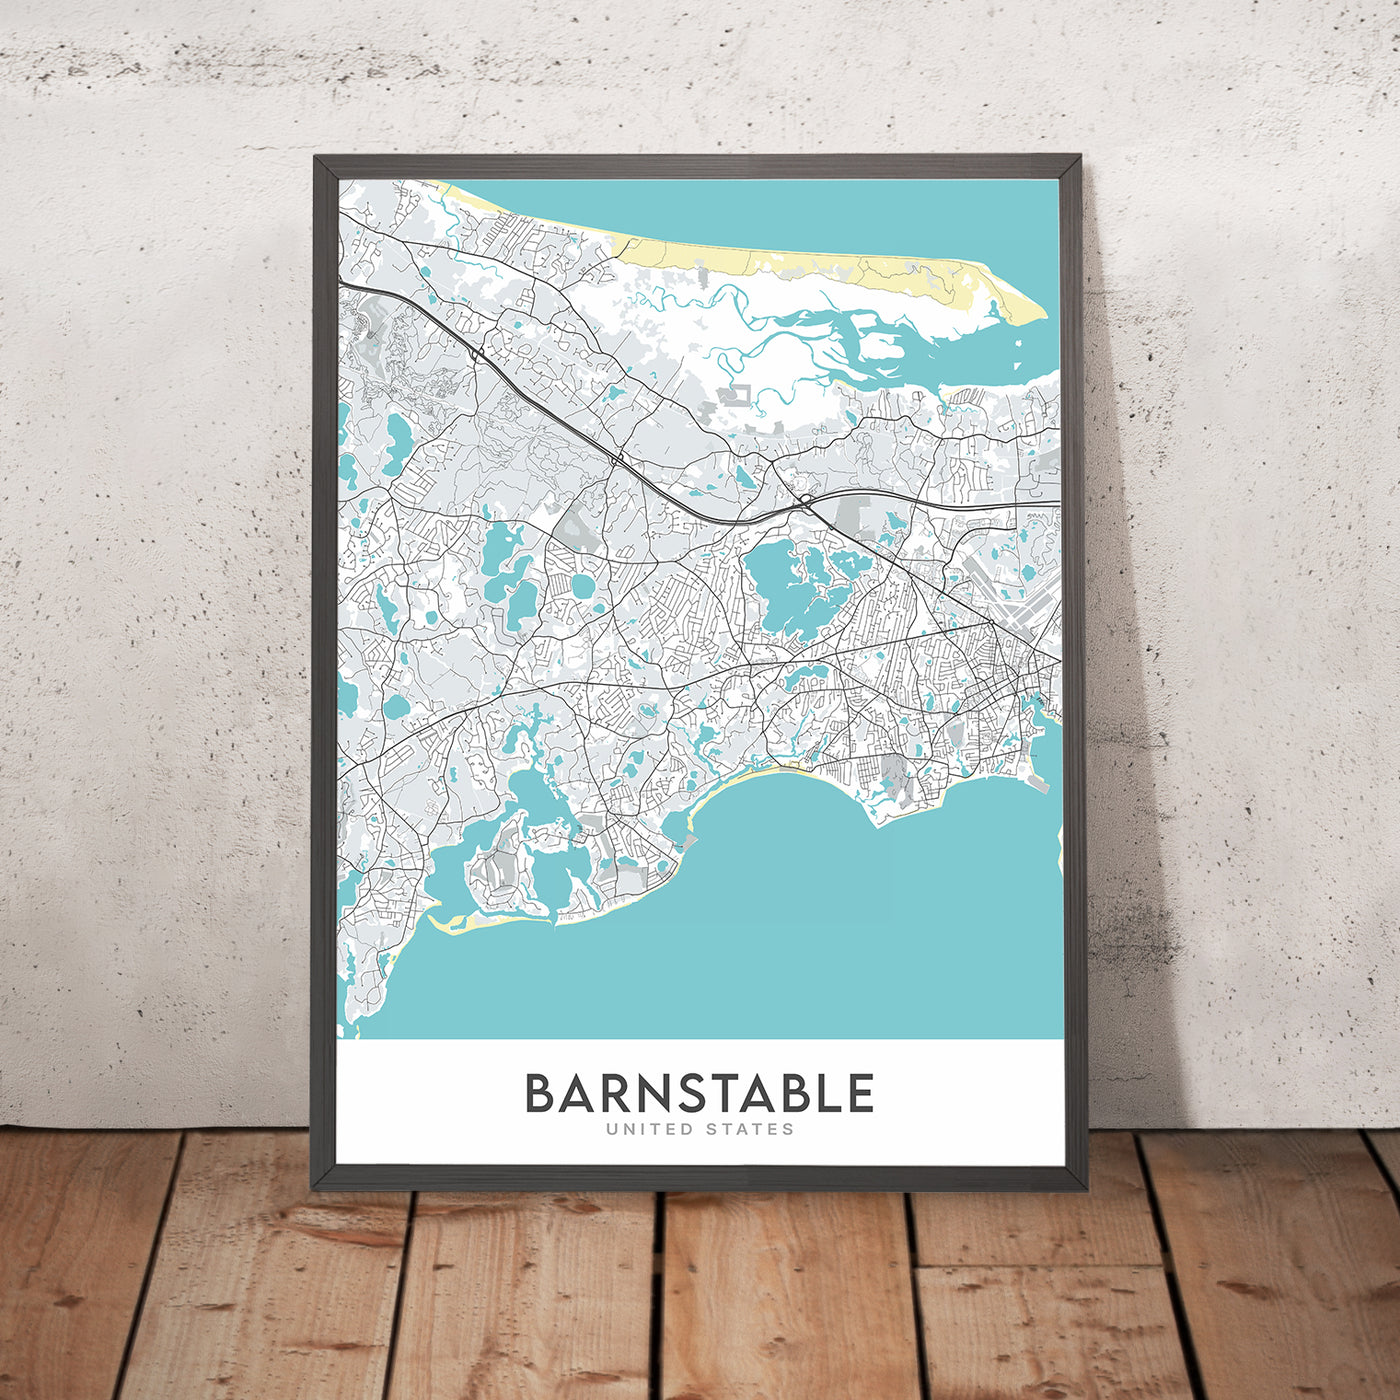 Moderner Stadtplan von Barnstable, MA: Barnstable Village, Hyannis, Sandy Neck Beach, Route 6, Route 28